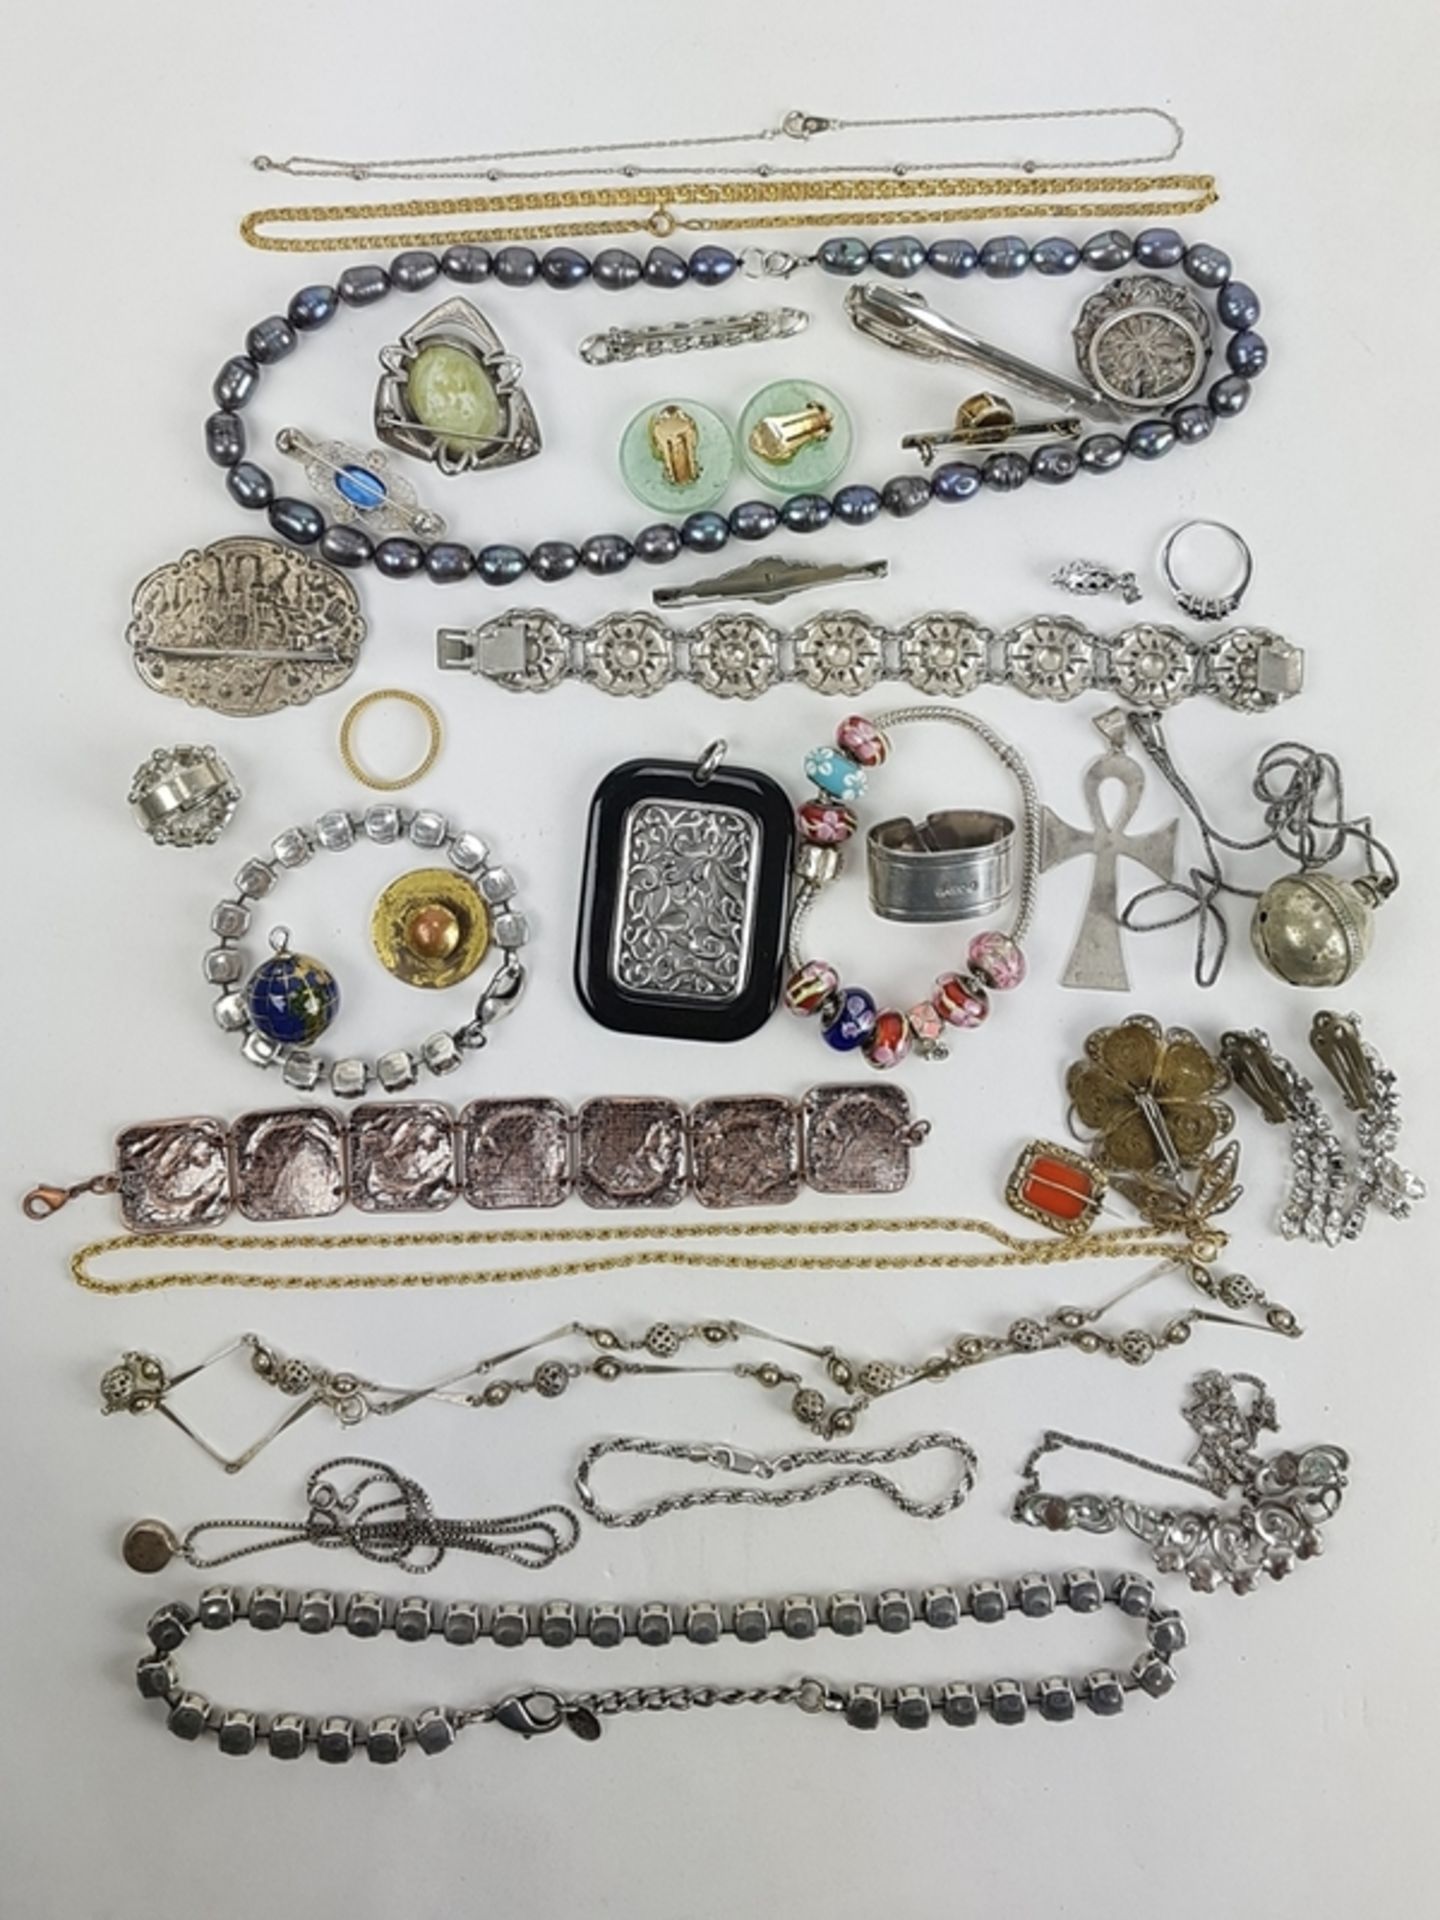 (Sieraden) Diverse materialen, lot van 34 stuks diverse sieraden, 20e eeuwDiverse materialen w - Bild 3 aus 15